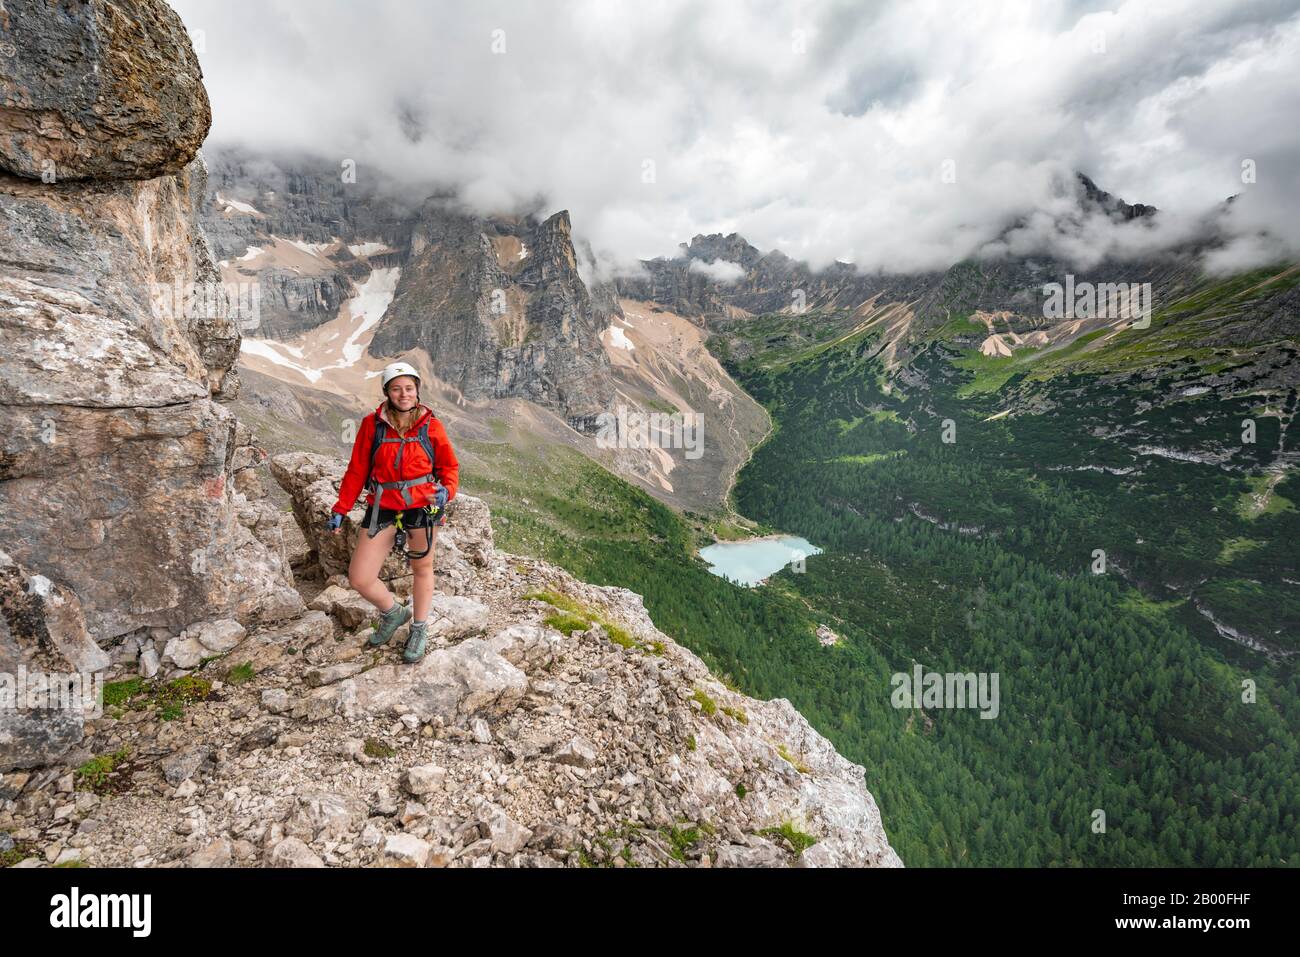 Jeune femme, randonneur sur une corde fixe, Via ferrata Vandelli, Sorapiss circuit, montagnes à faible nuage, Dolomites, Belluno, Italie Banque D'Images